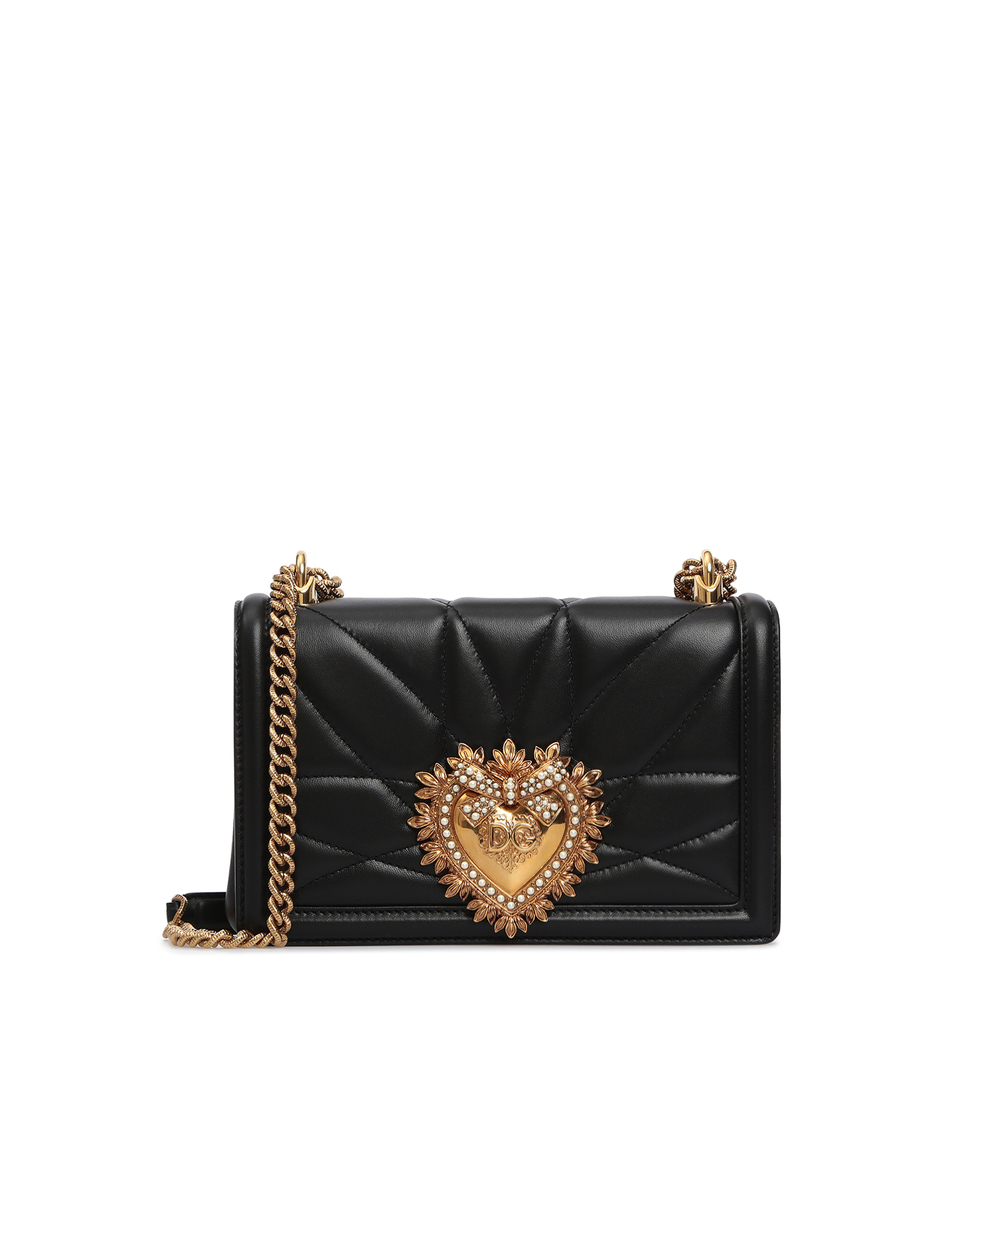 Кожаная сумка Devotion Medium Dolce&Gabbana BB6652-AV967, черный цвет • Купить в интернет-магазине Kameron